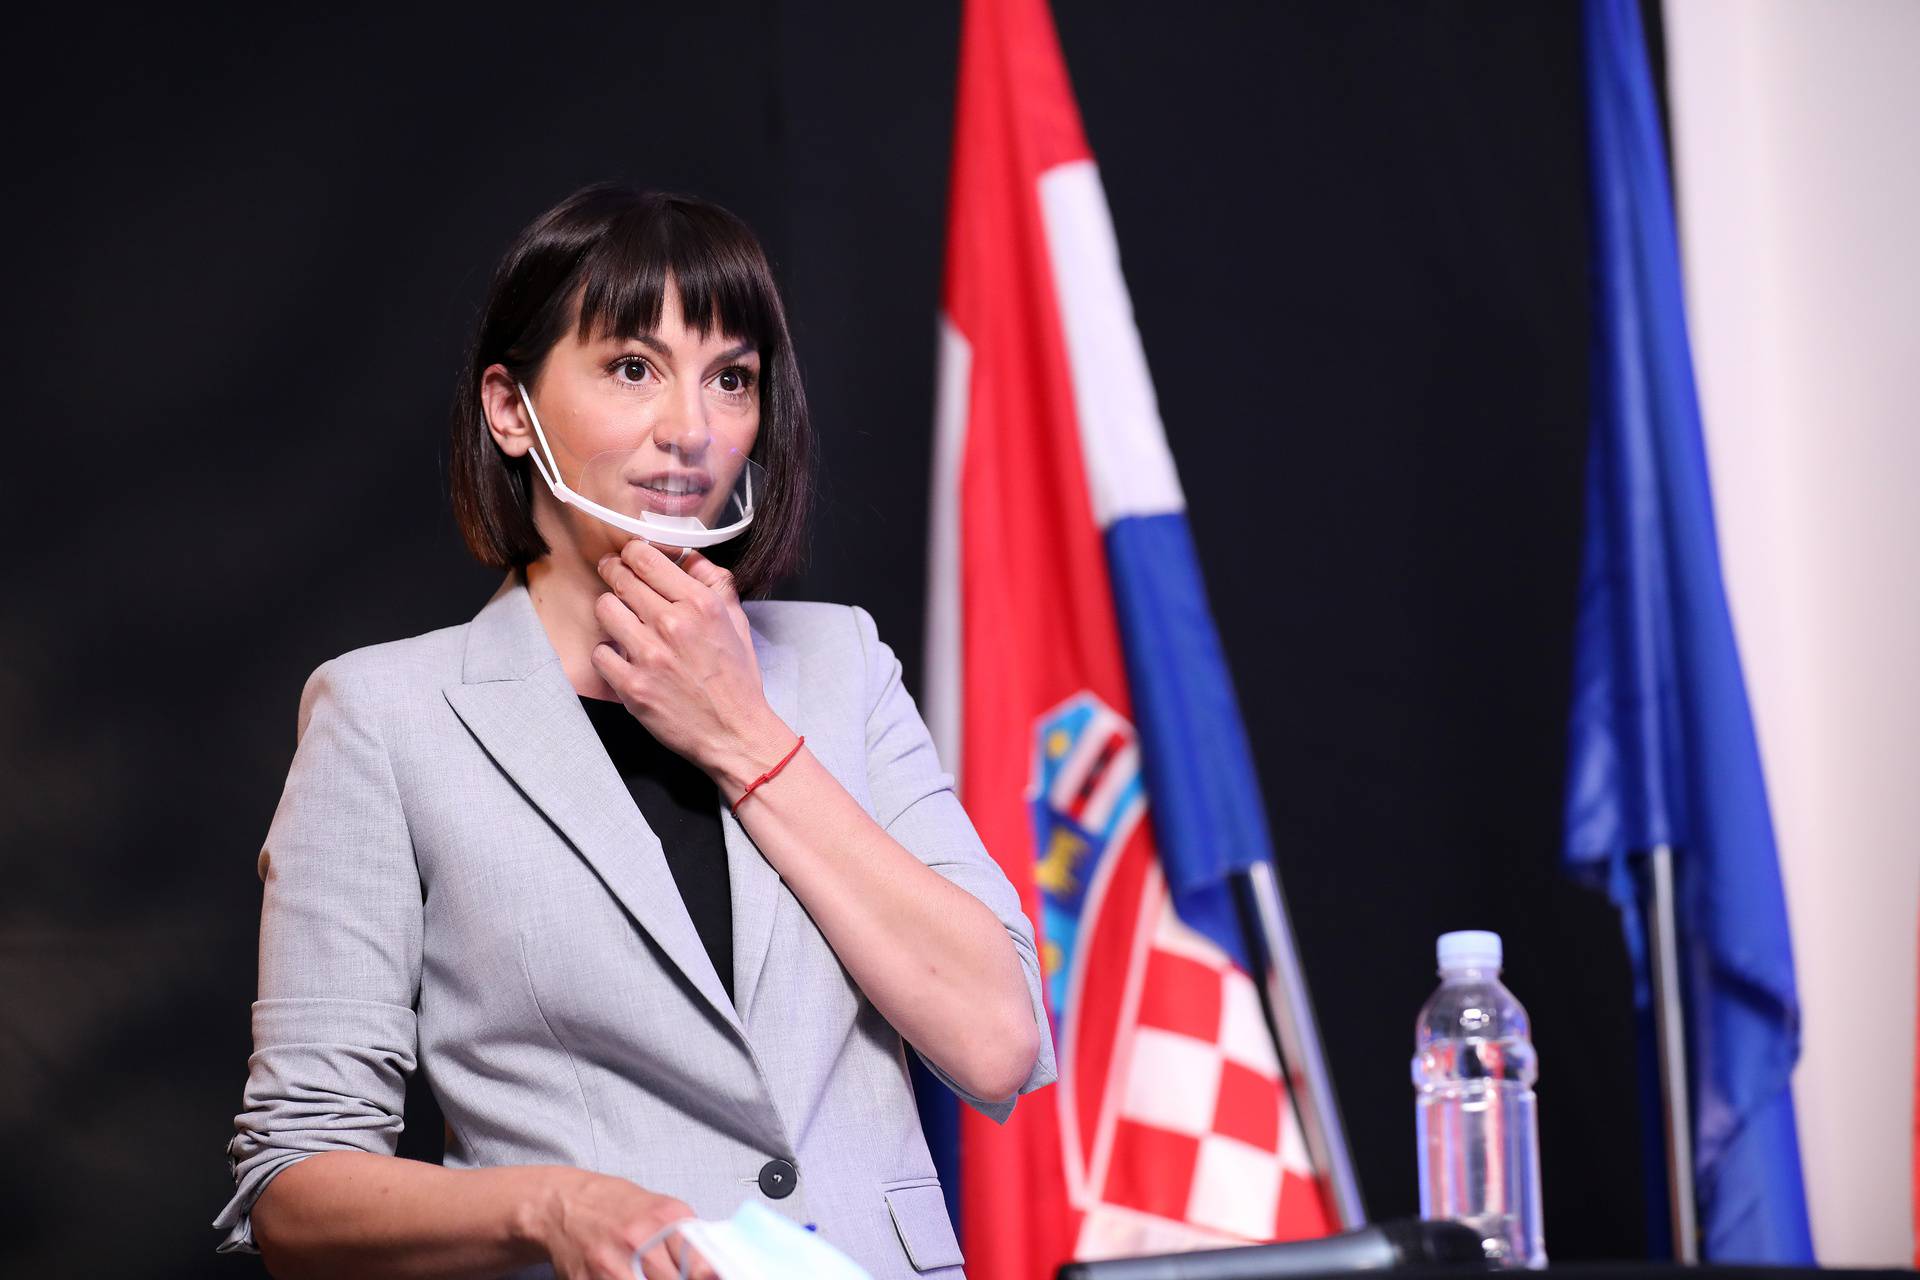 Prvi javni nastup nakon odlaska  s Nove TV: Ivana Paradžiković pojavila se u ulozi moderatorice